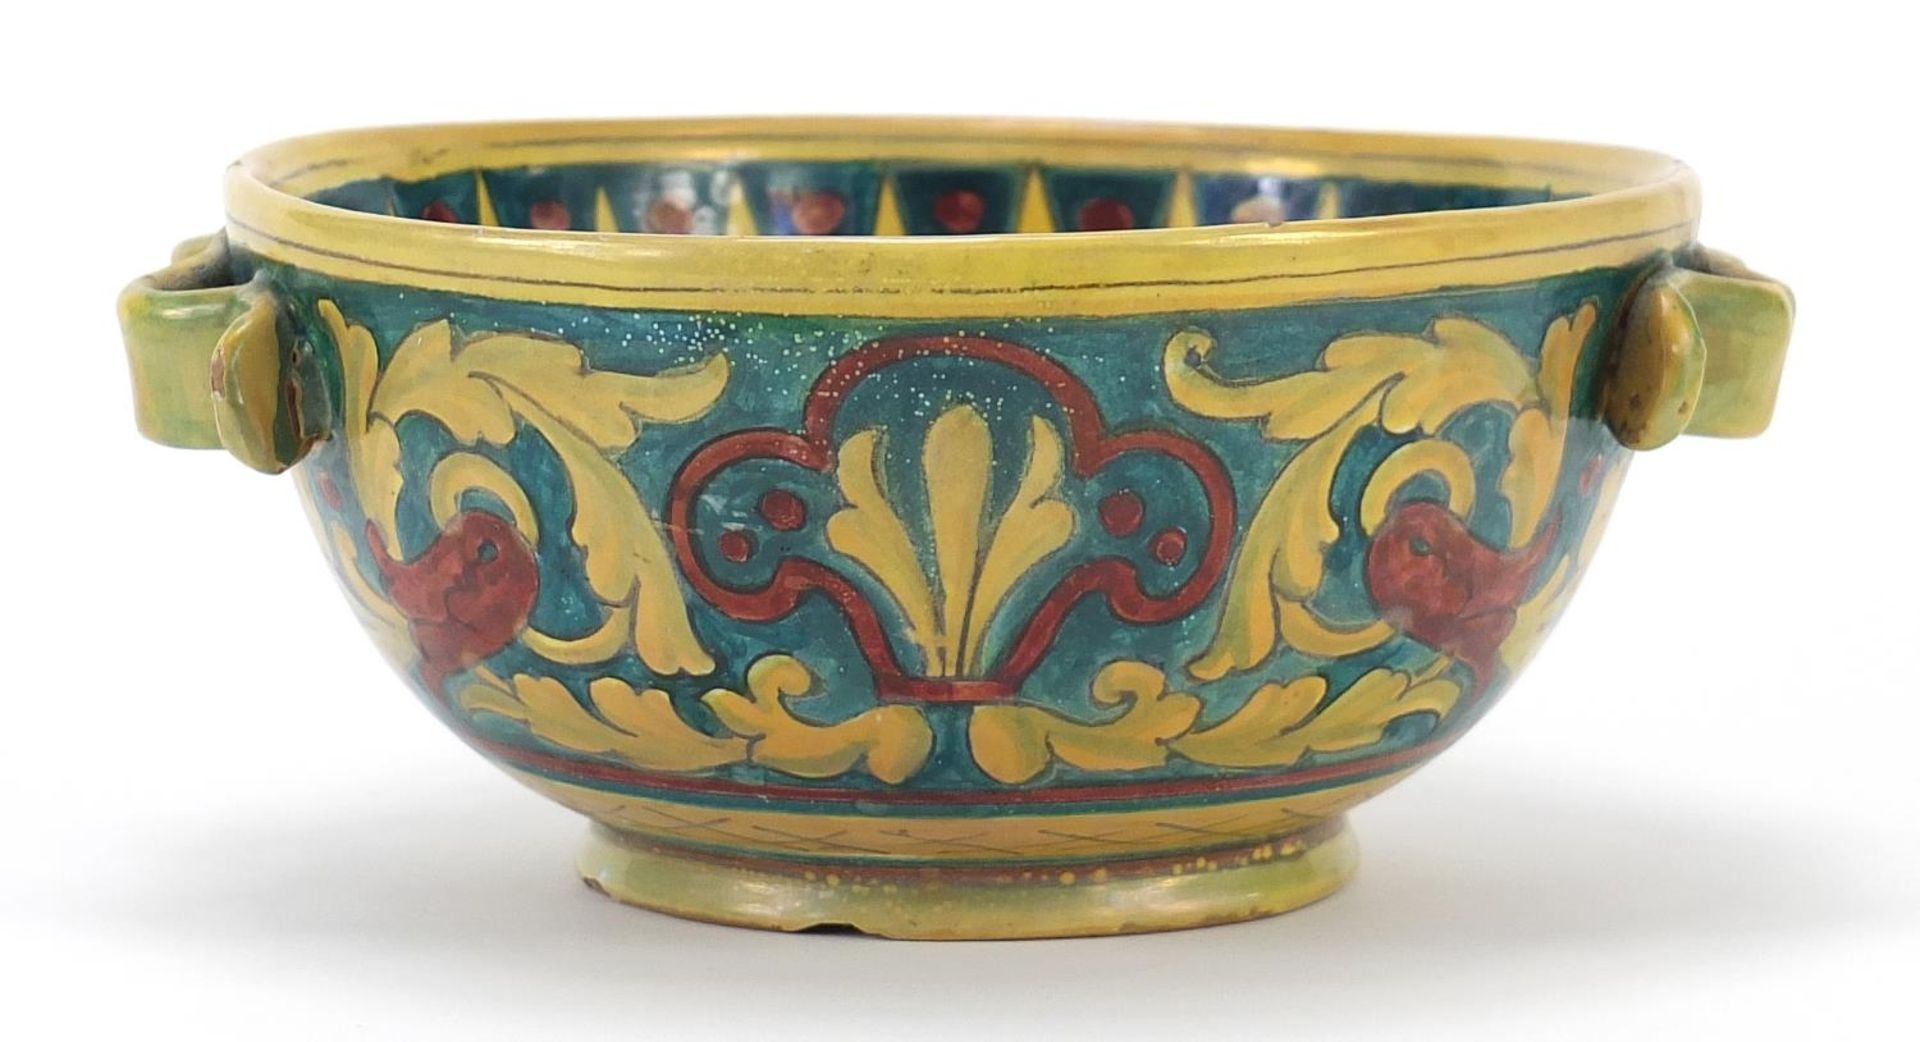 Italian lustre bowl in the style of William de Morgan, 18.5cm in diameter - Image 2 of 6